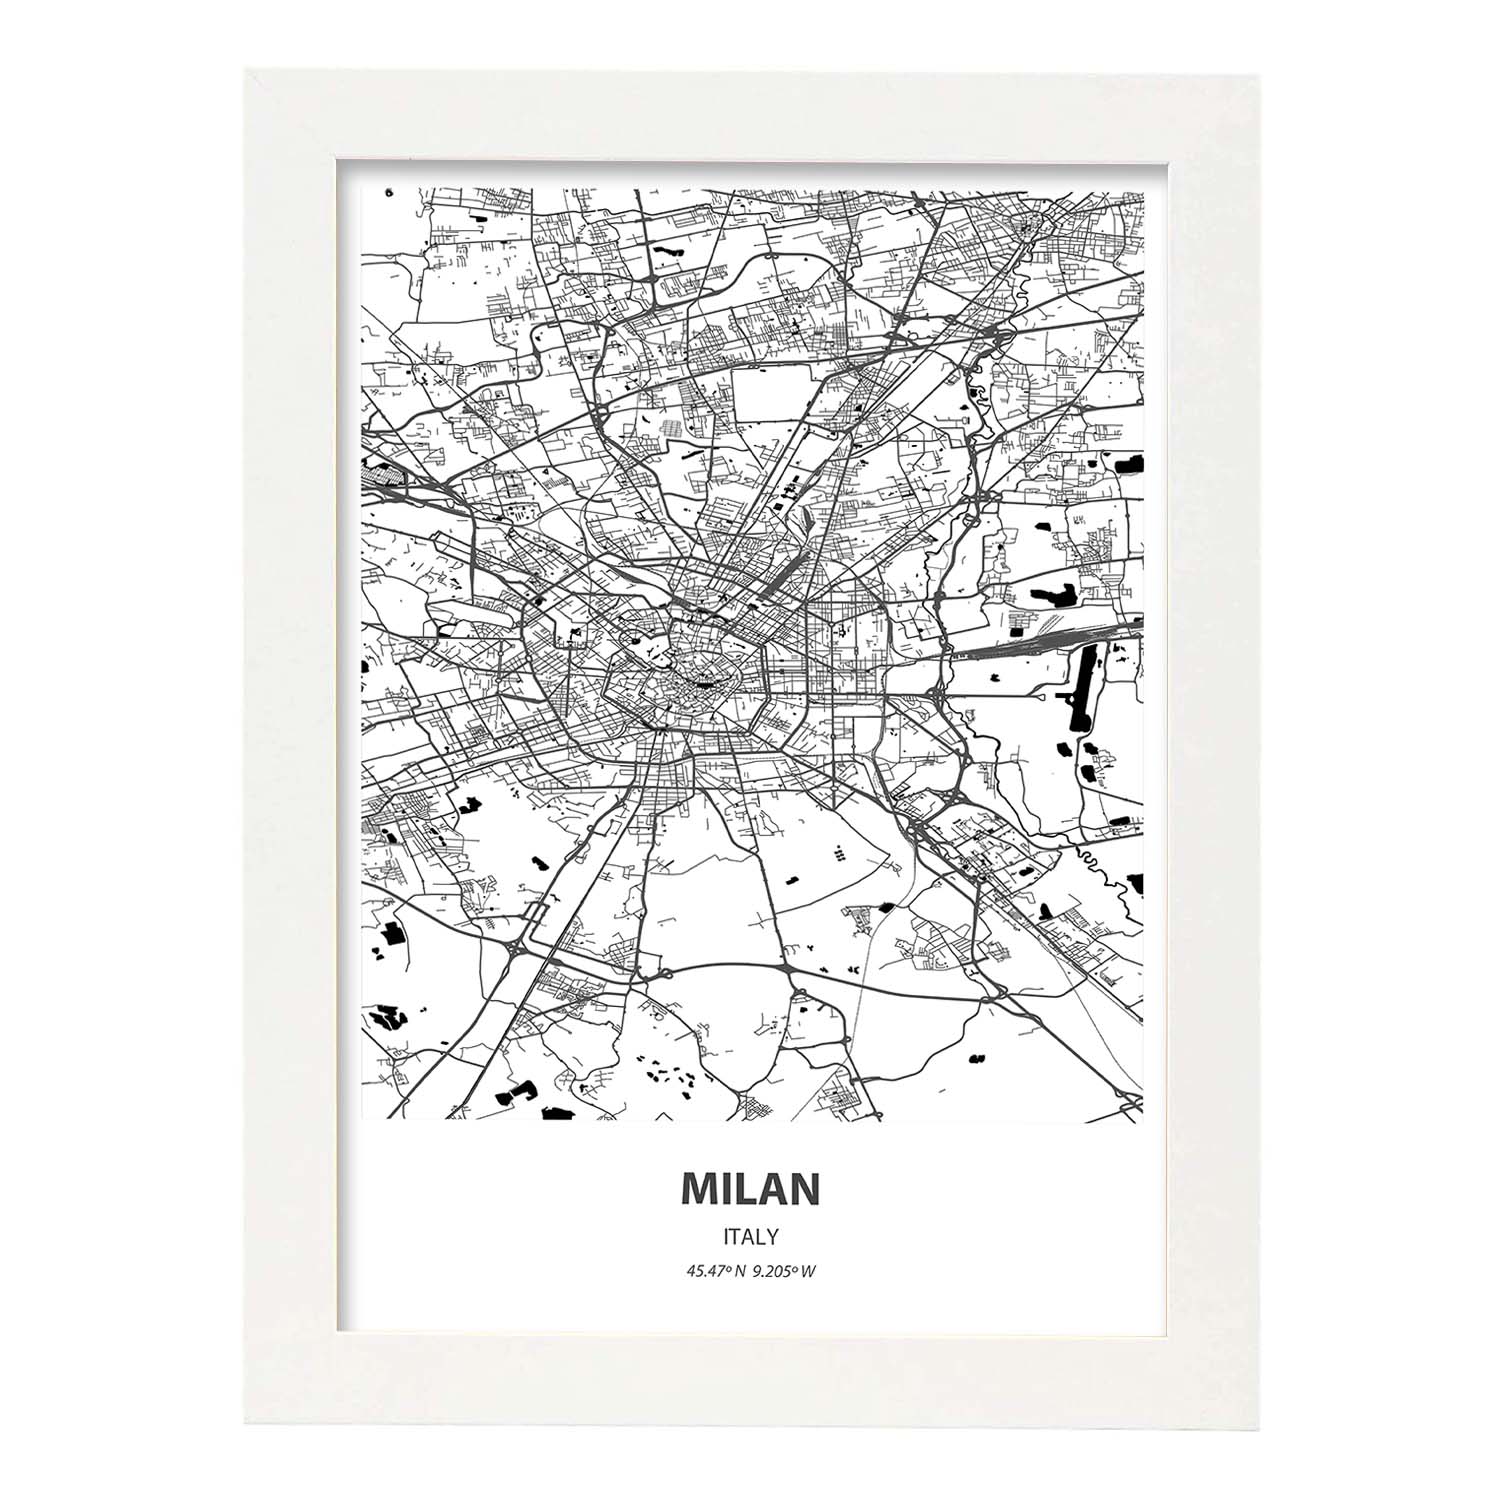 Poster con mapa de Milan - Italia. Láminas de ciudades de Italia con mares y ríos en color negro.-Artwork-Nacnic-A3-Marco Blanco-Nacnic Estudio SL